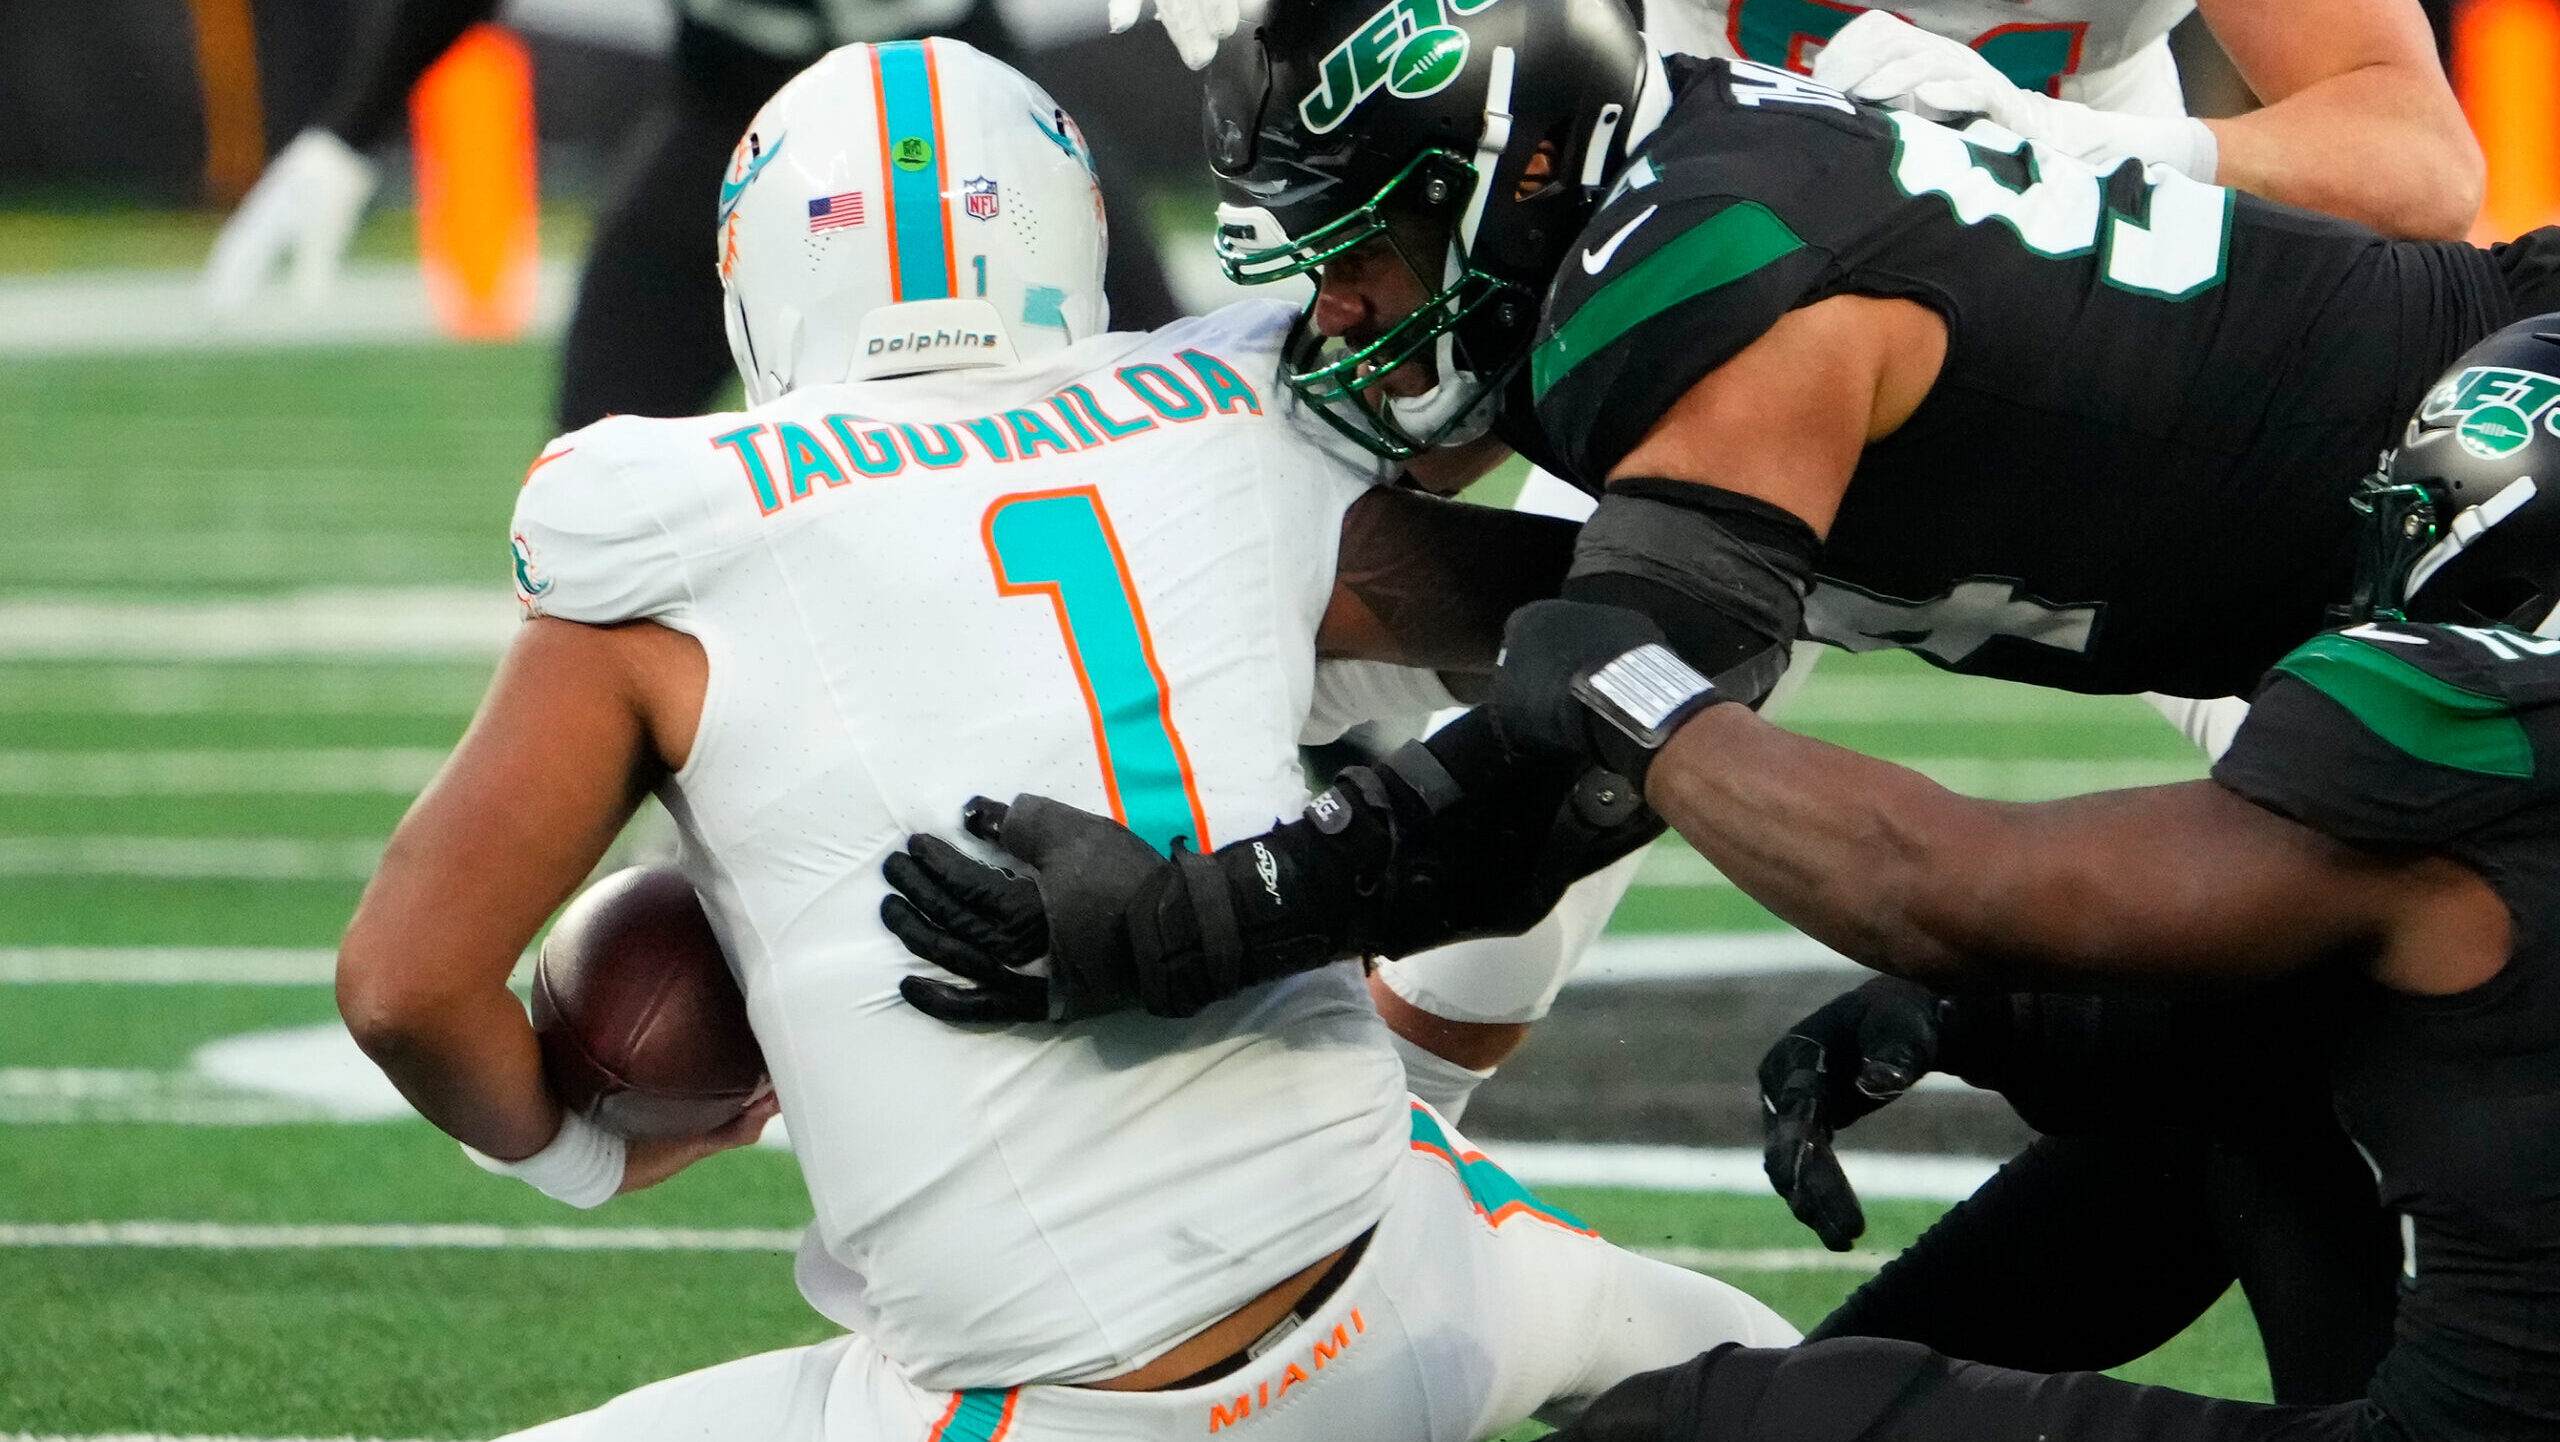 New York Jets defensive end Solomon Thomas sacks Miami Dolphins quarterback Tua Tagovailoa